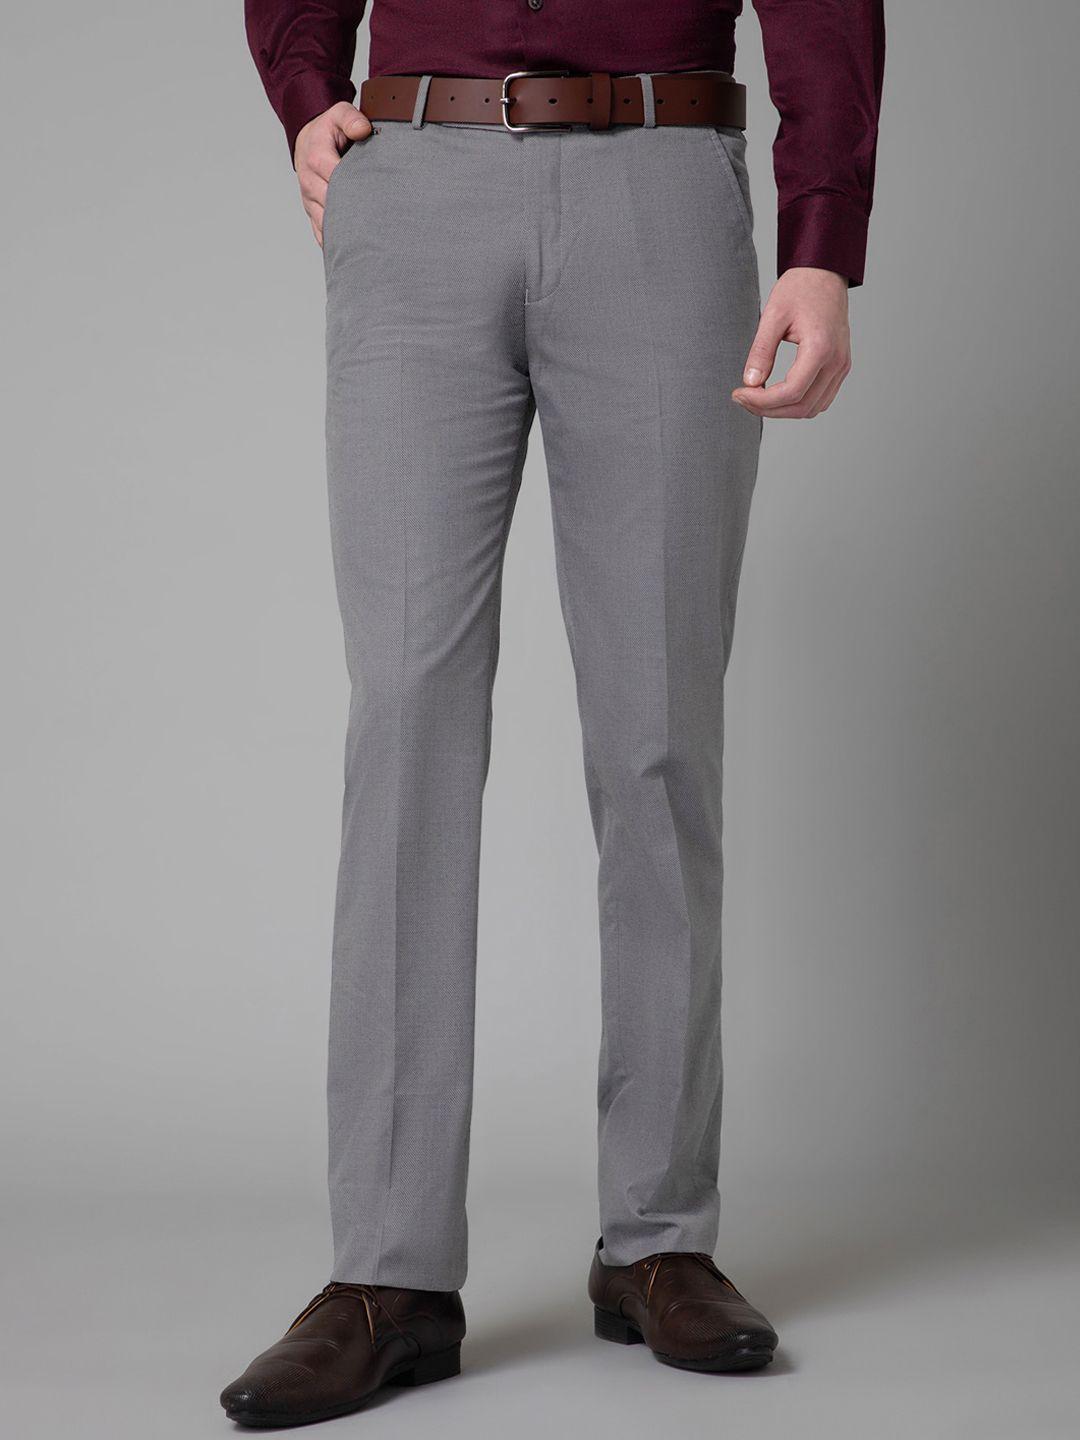 cantabil-men-regular-fit-formal-trouser